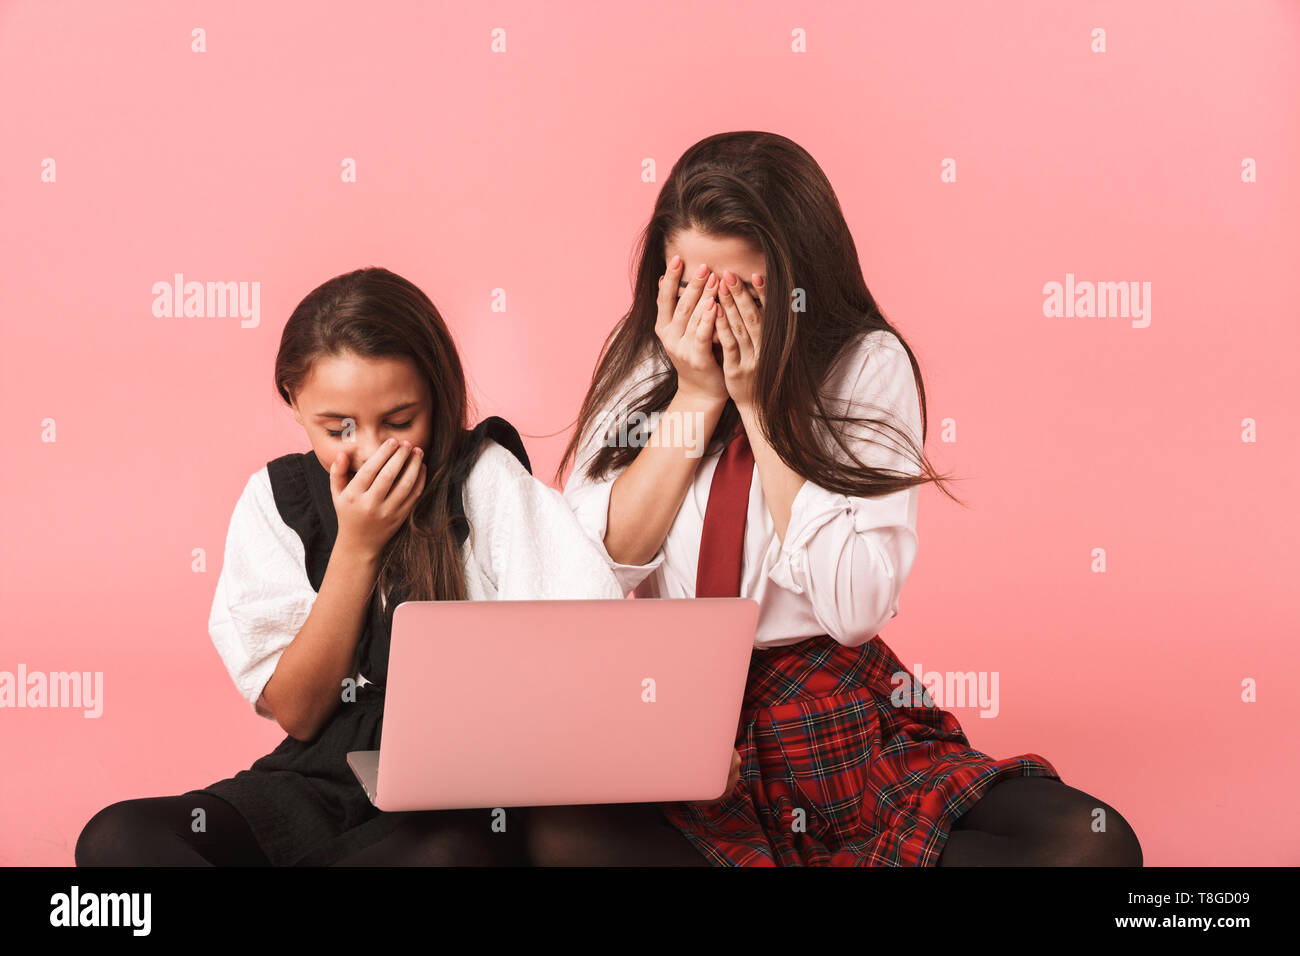 Ritratto di ragazze europeo in uniforme scolastica utilizzando computer portatile mentre è seduto sul pavimento isolato su sfondo rosso Foto Stock